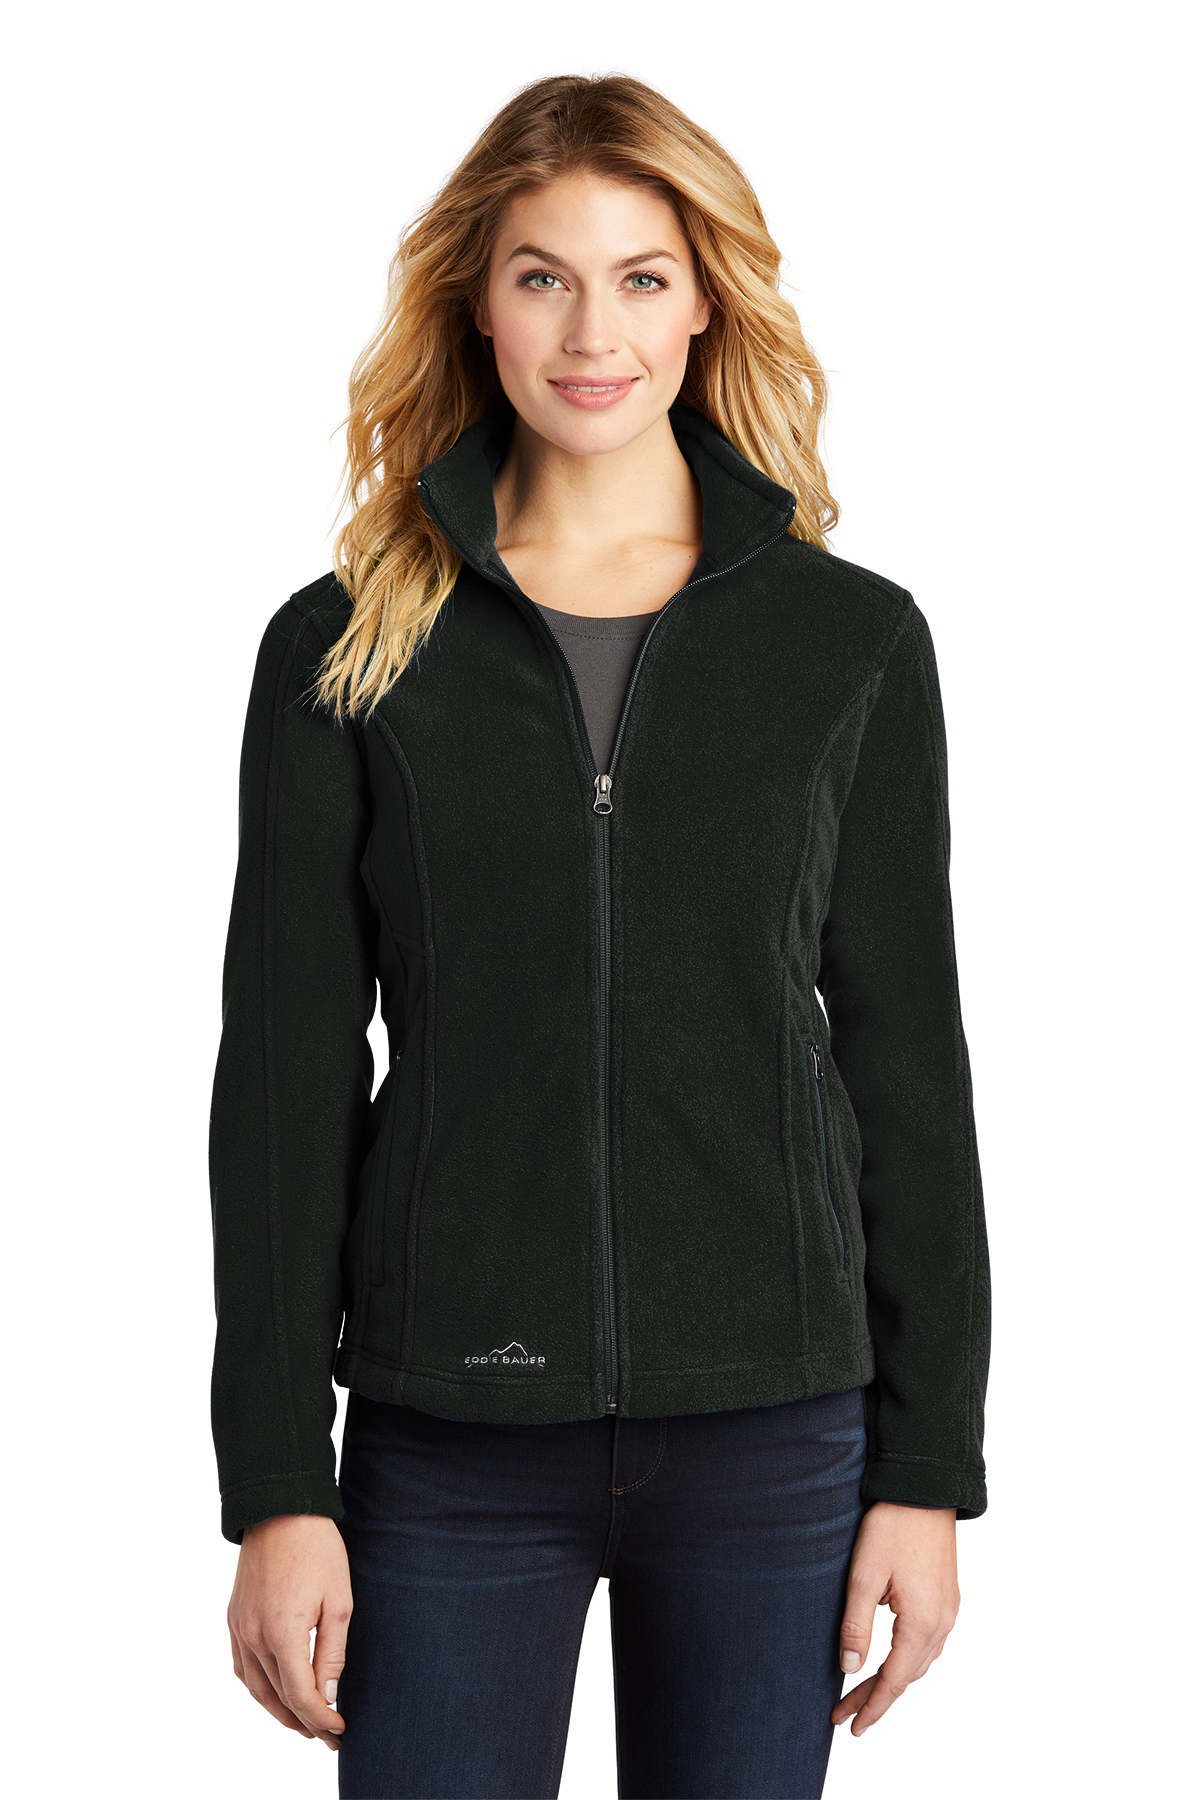 Eddie Bauer - Ladies Full-Zip Fleece Jacket | Product | Company Casuals